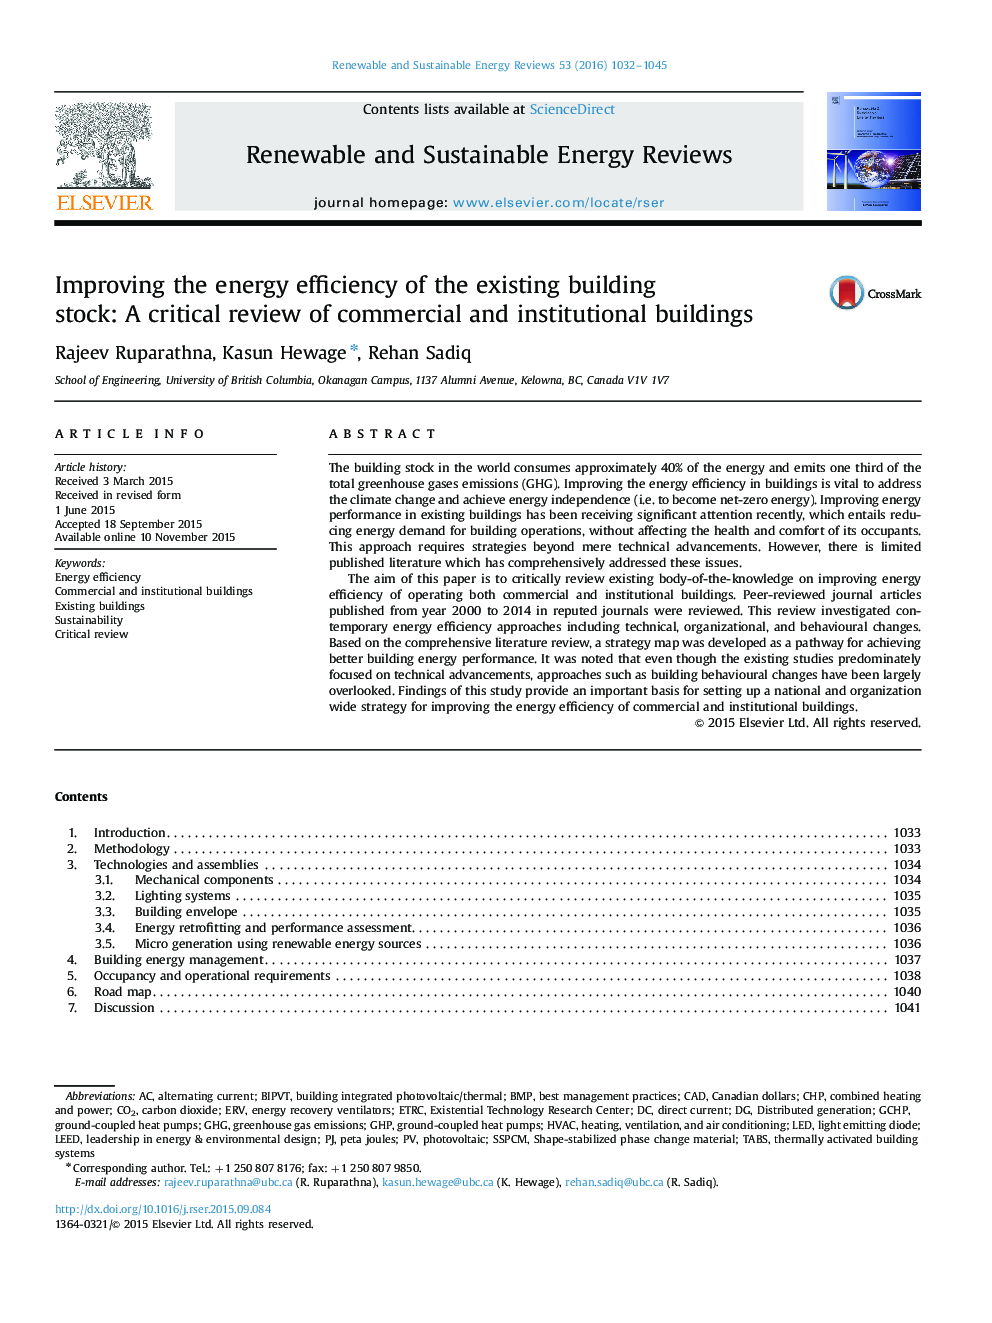 بهبود بهره وری انرژی موجود در ساختمان: بررسی بحرانی ساختمان های تجاری و نهادی 